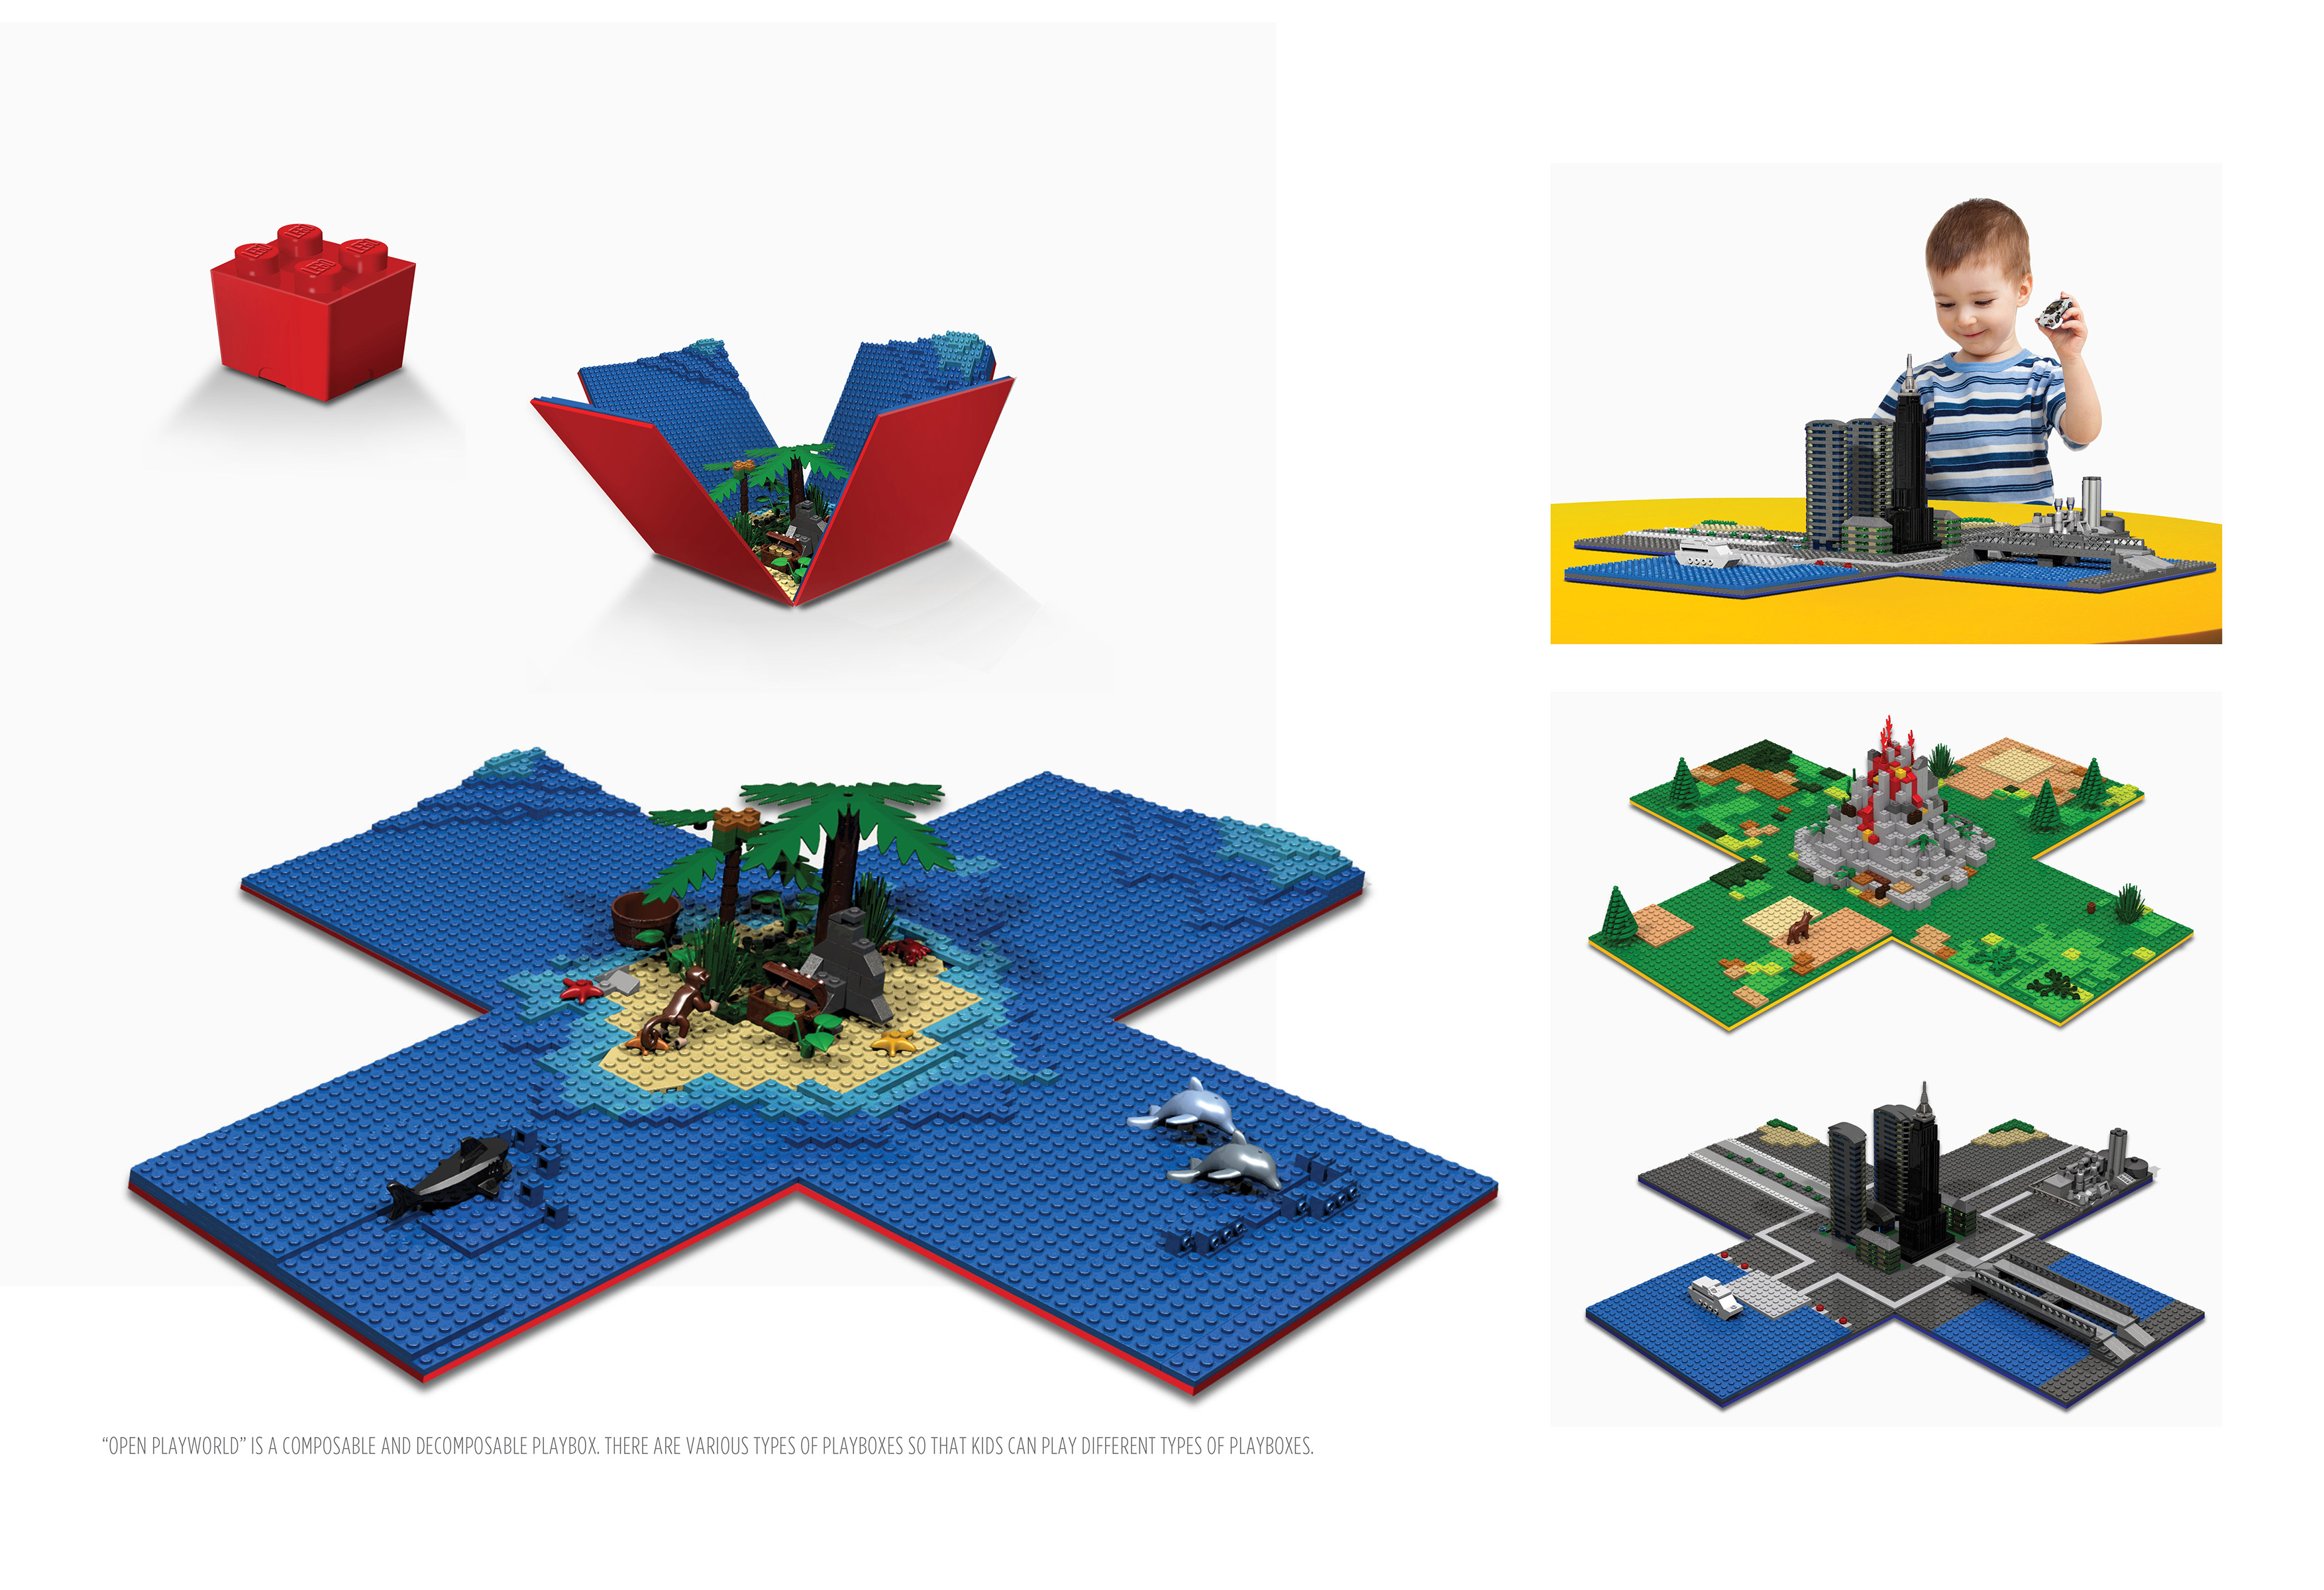 LEGO Playworld